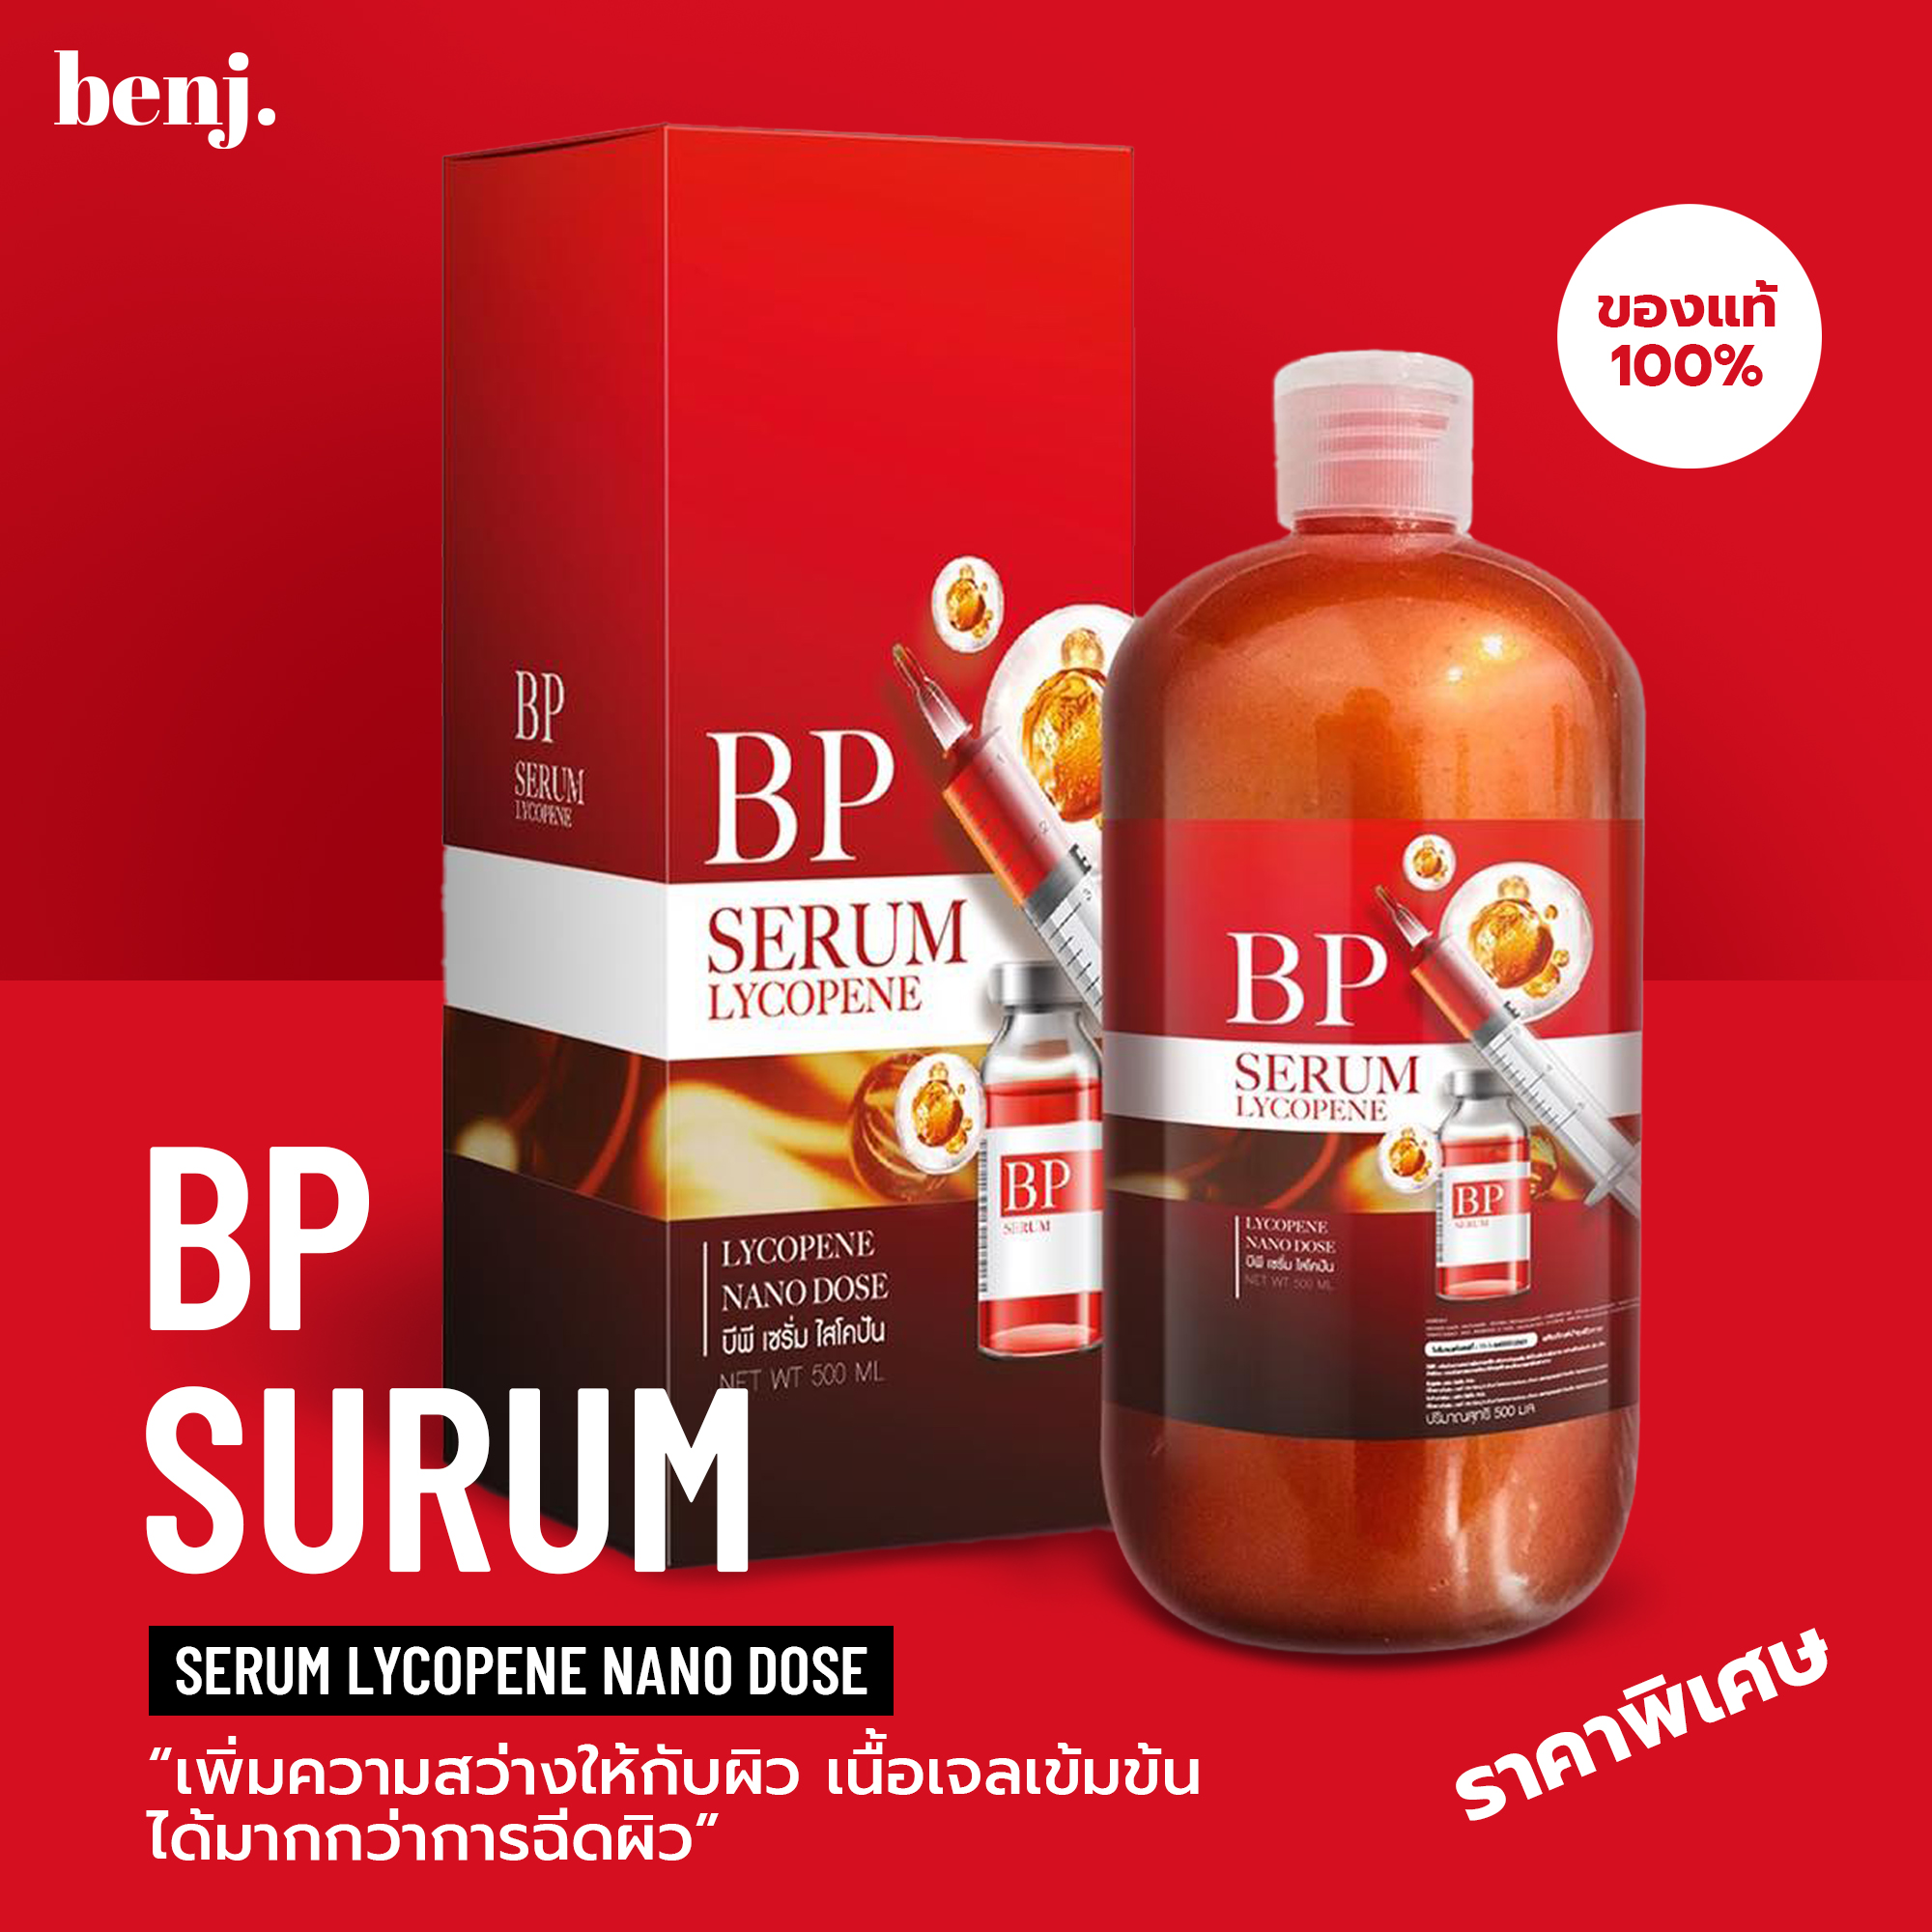 บีพีเซรั่ม เซรั่มผิวขาว(โปรร้านใหม่ราคาพิเศษ)BP Serum Lycopene เข้มข้นมากกว่าการฉีดผิว